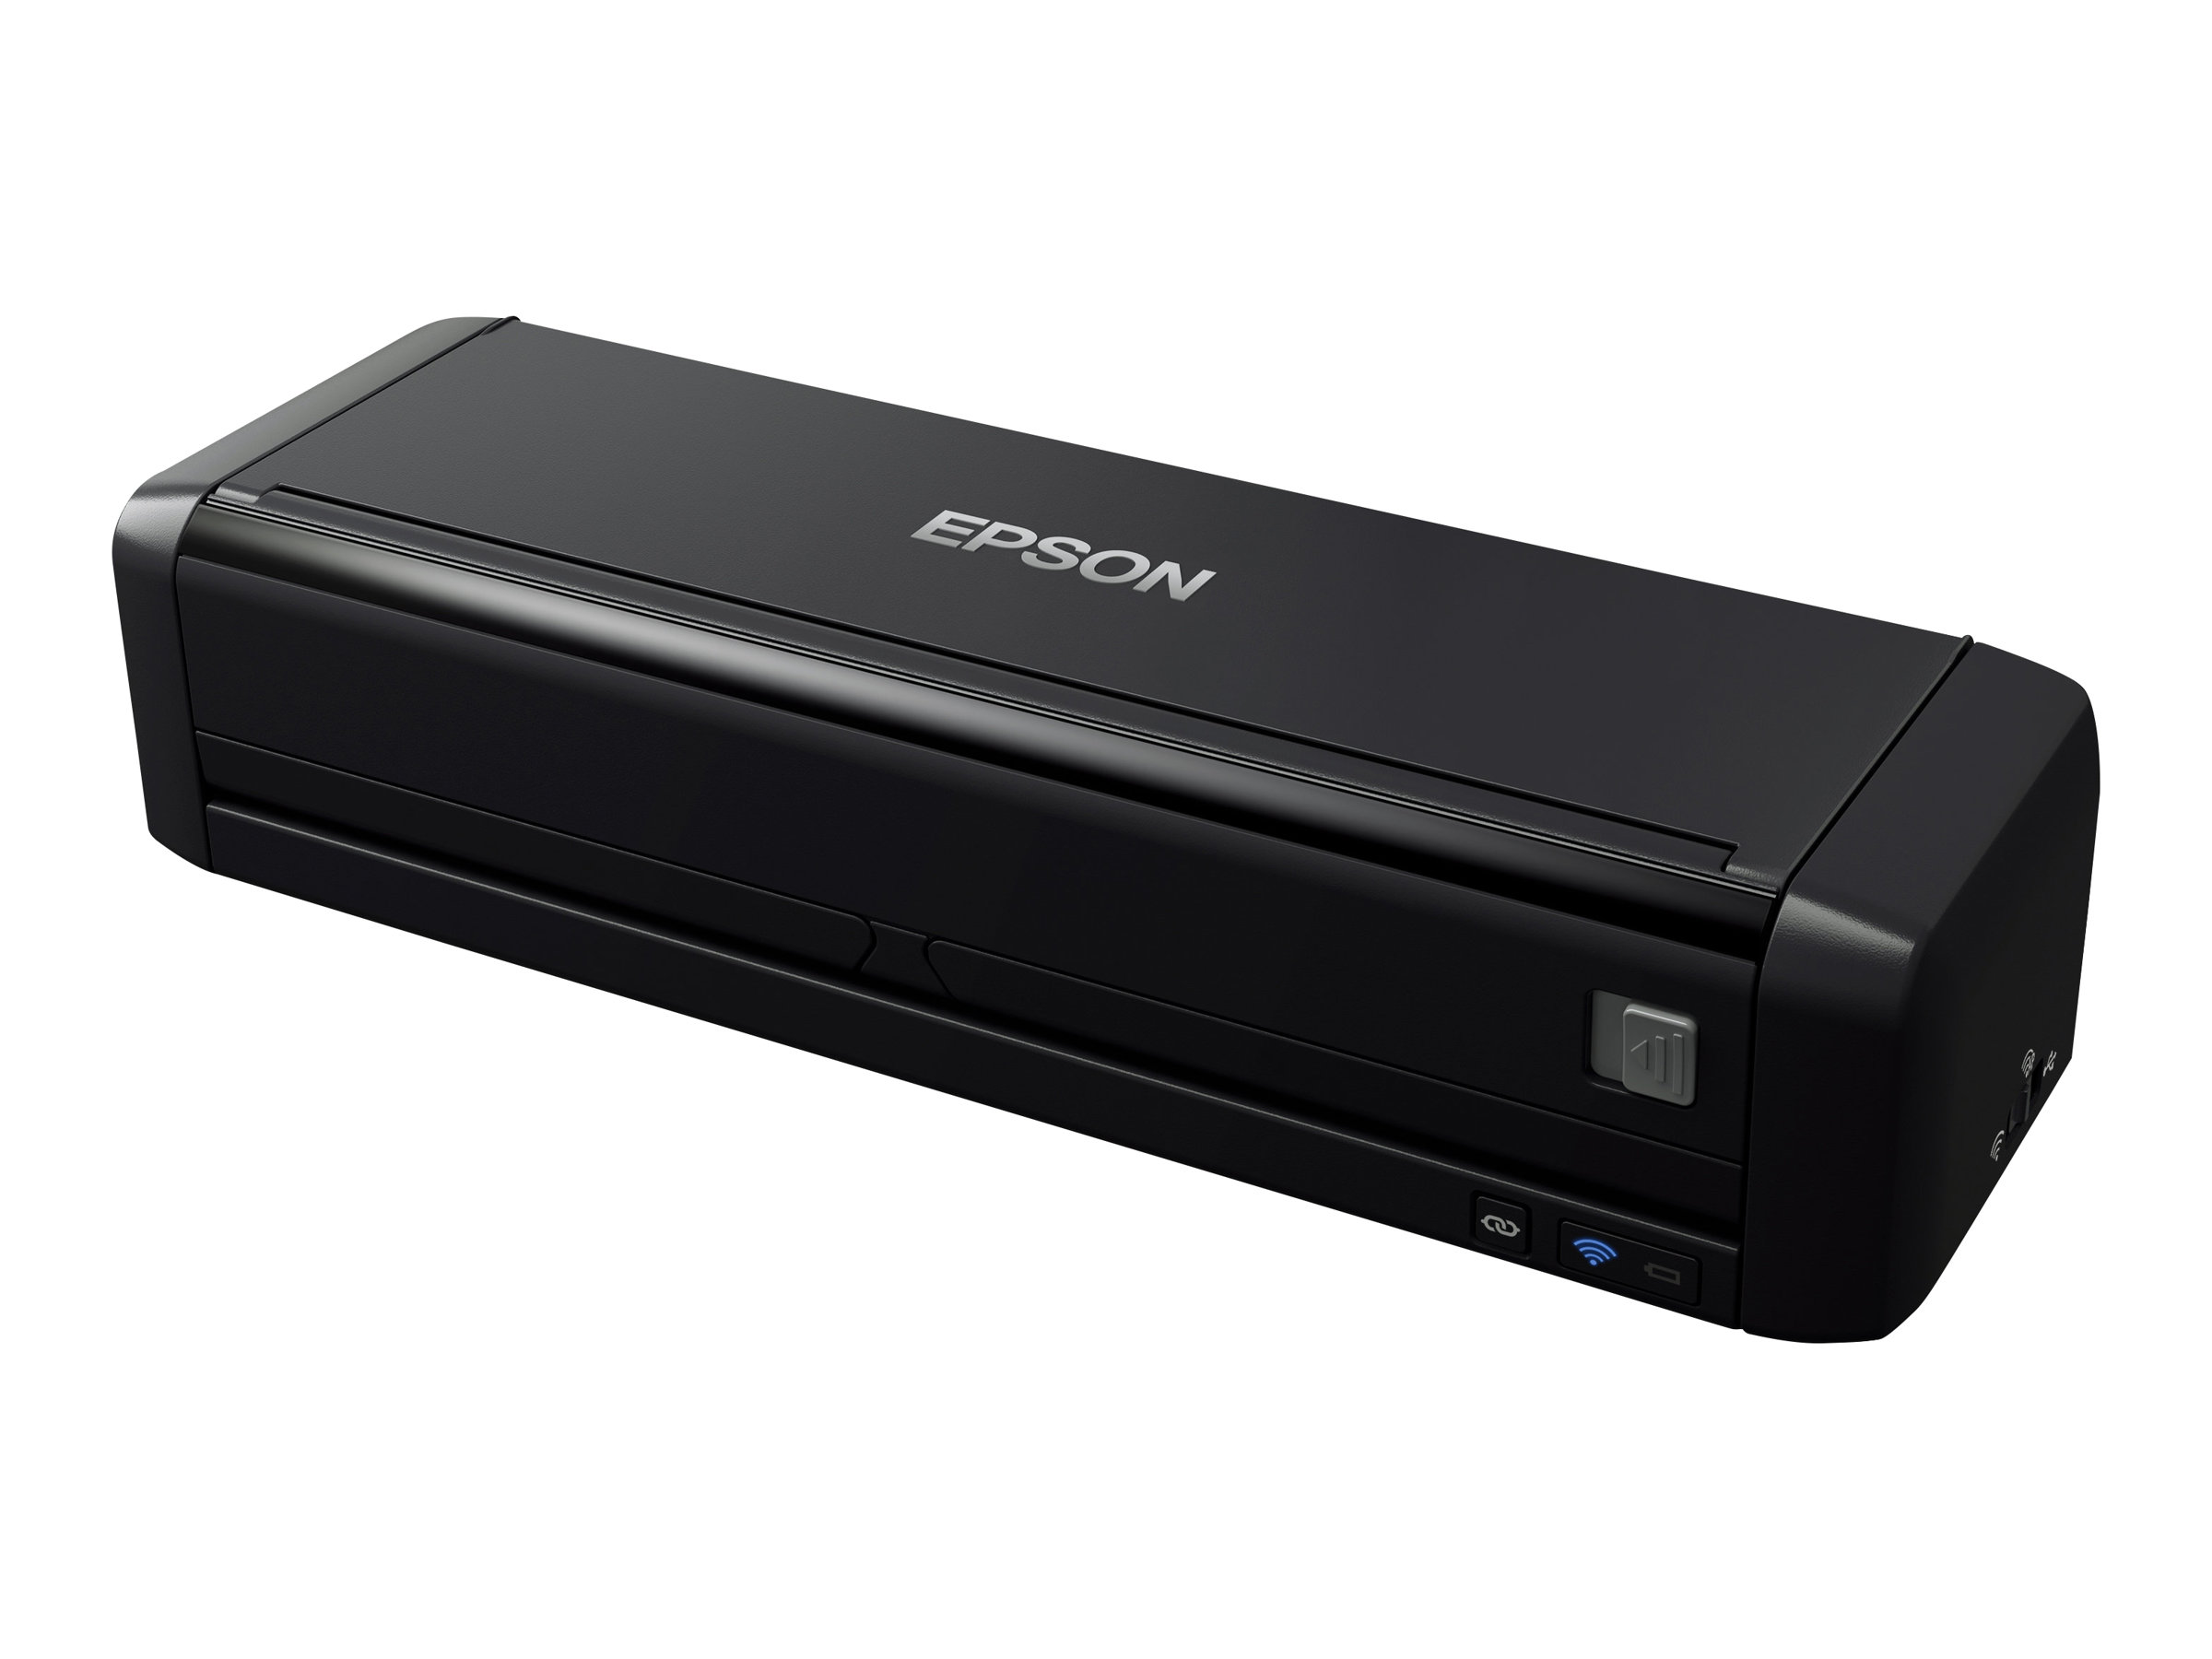 Epson WorkForce DS-360W - Dokumentenscanner - Duplex - A4 - 600 dpi x 600 dpi - bis zu 25 Seiten/Min. (einfarbig) / bis zu 25 Seiten/Min. (Farbe)